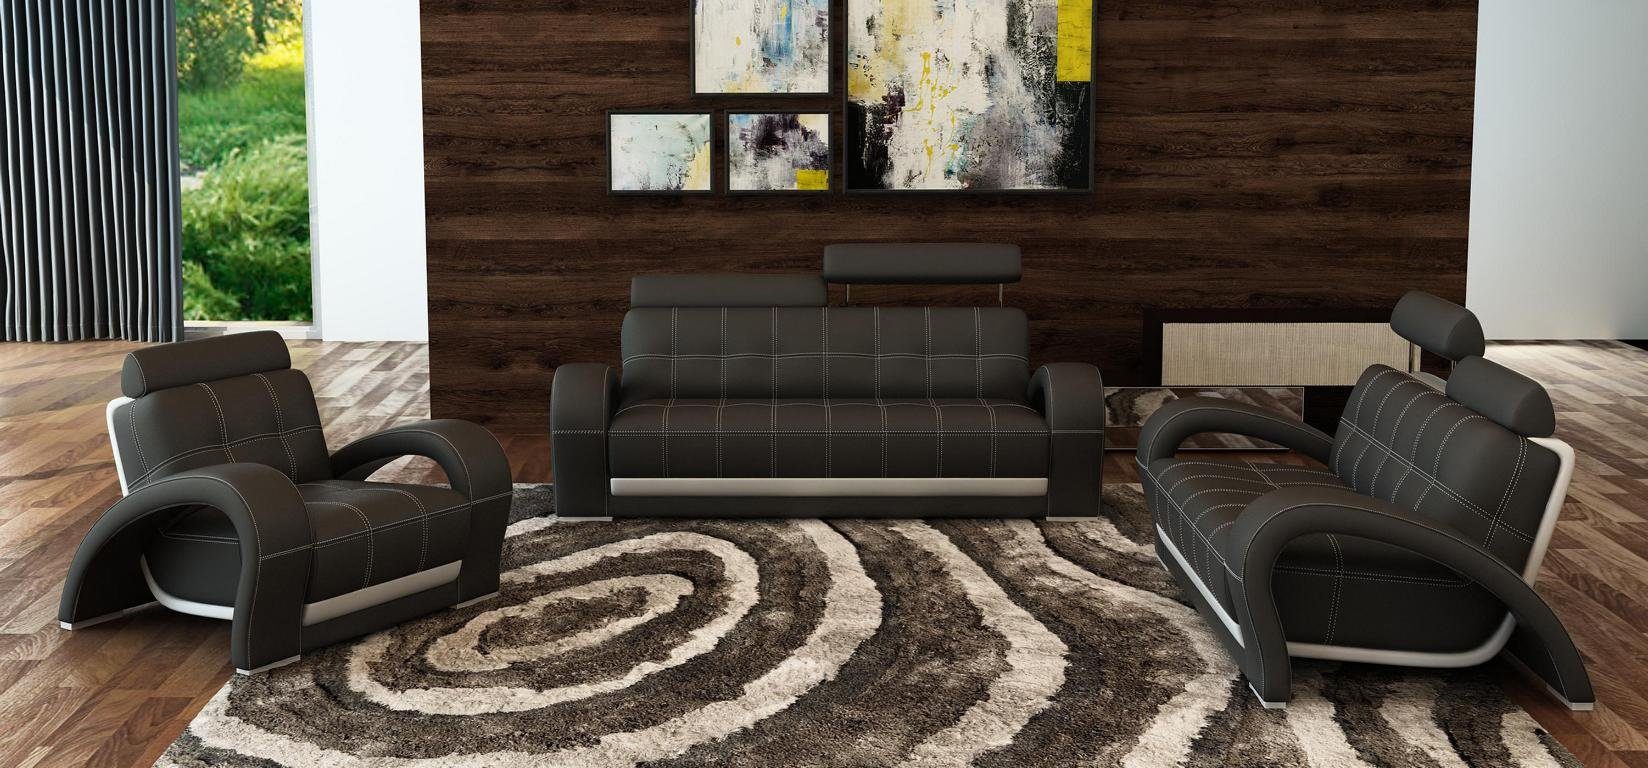 Couch JVmoebel Set, Garnituren Sofagarnitur Made Leder Europe Couch Sofa in Wohnzimmer